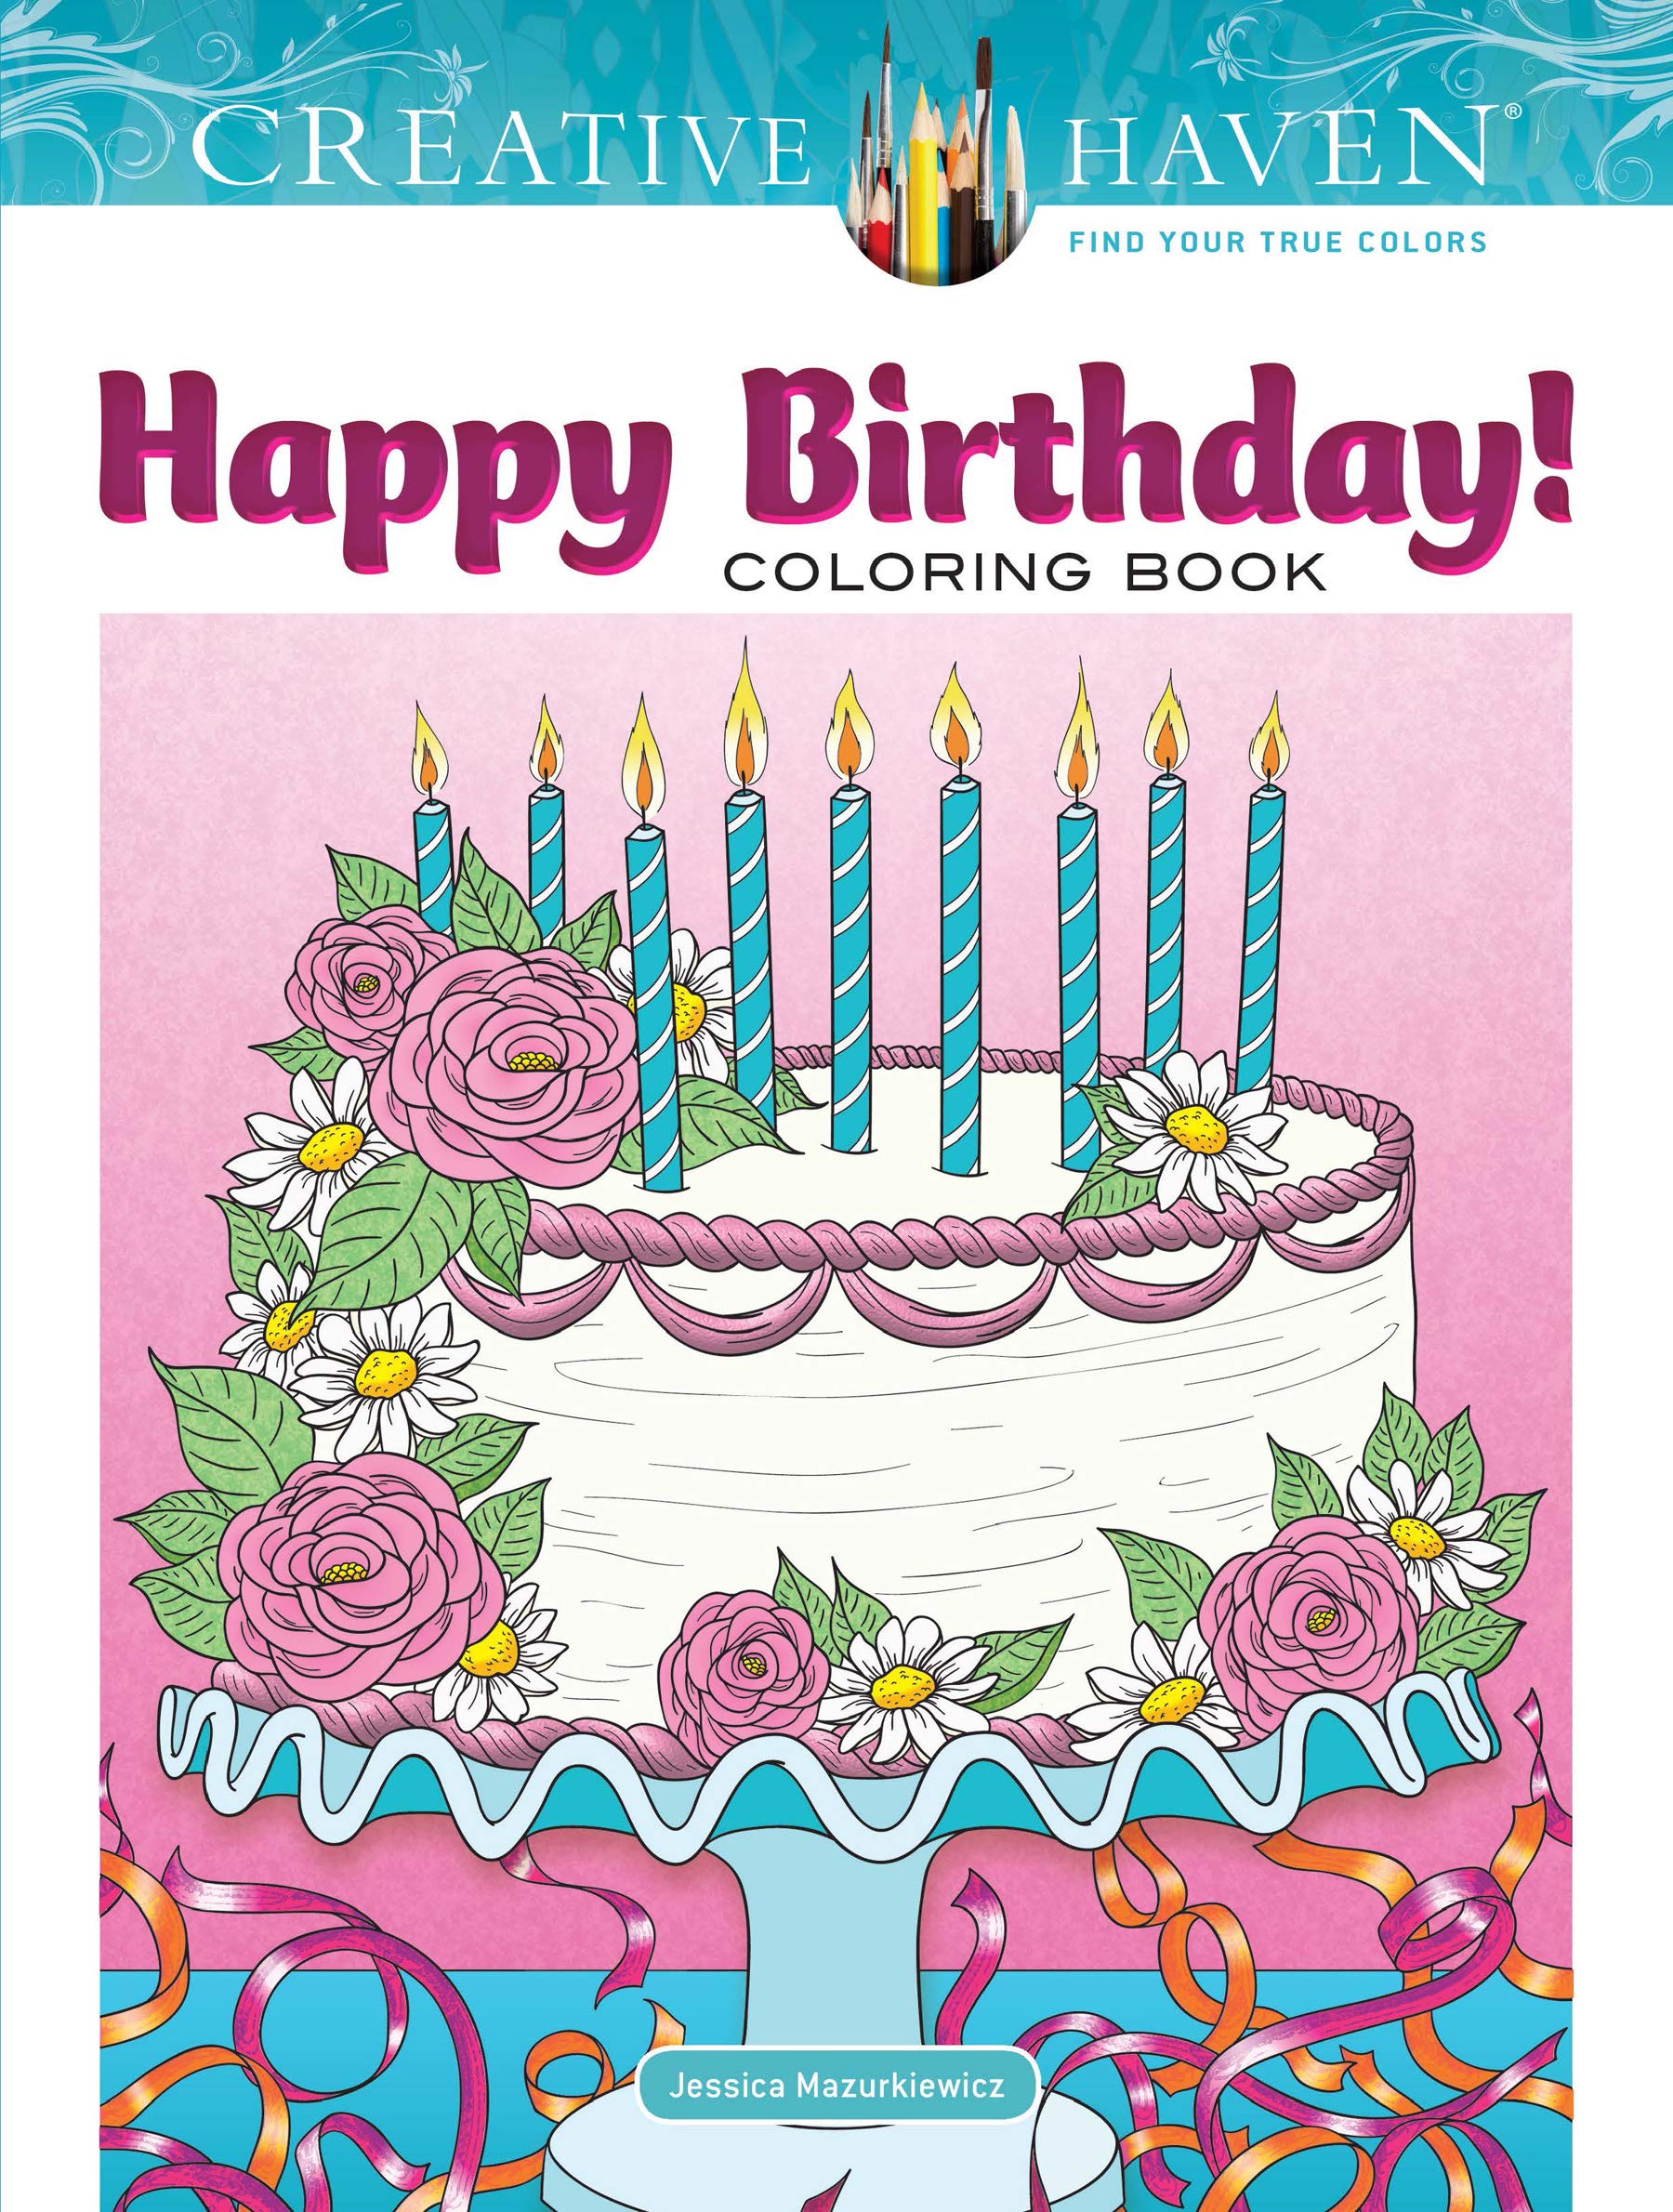  Happy Birthday! Coloring Book